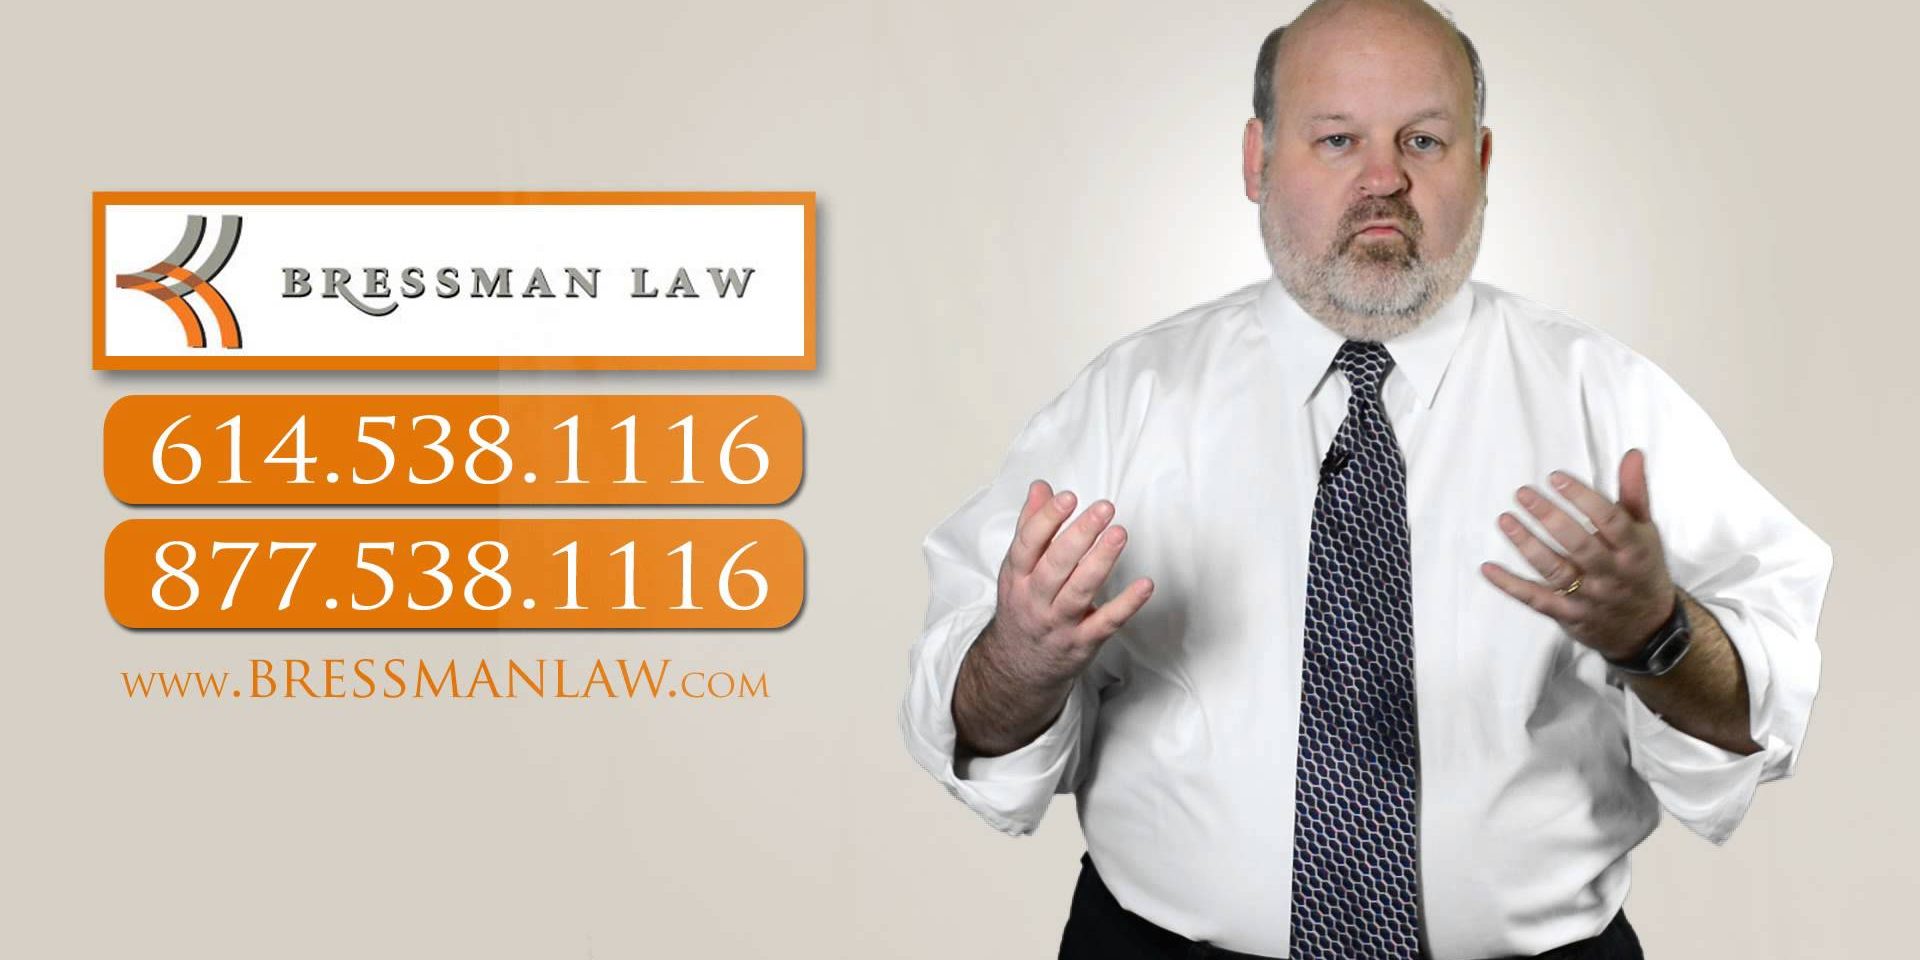 Bressman-Law